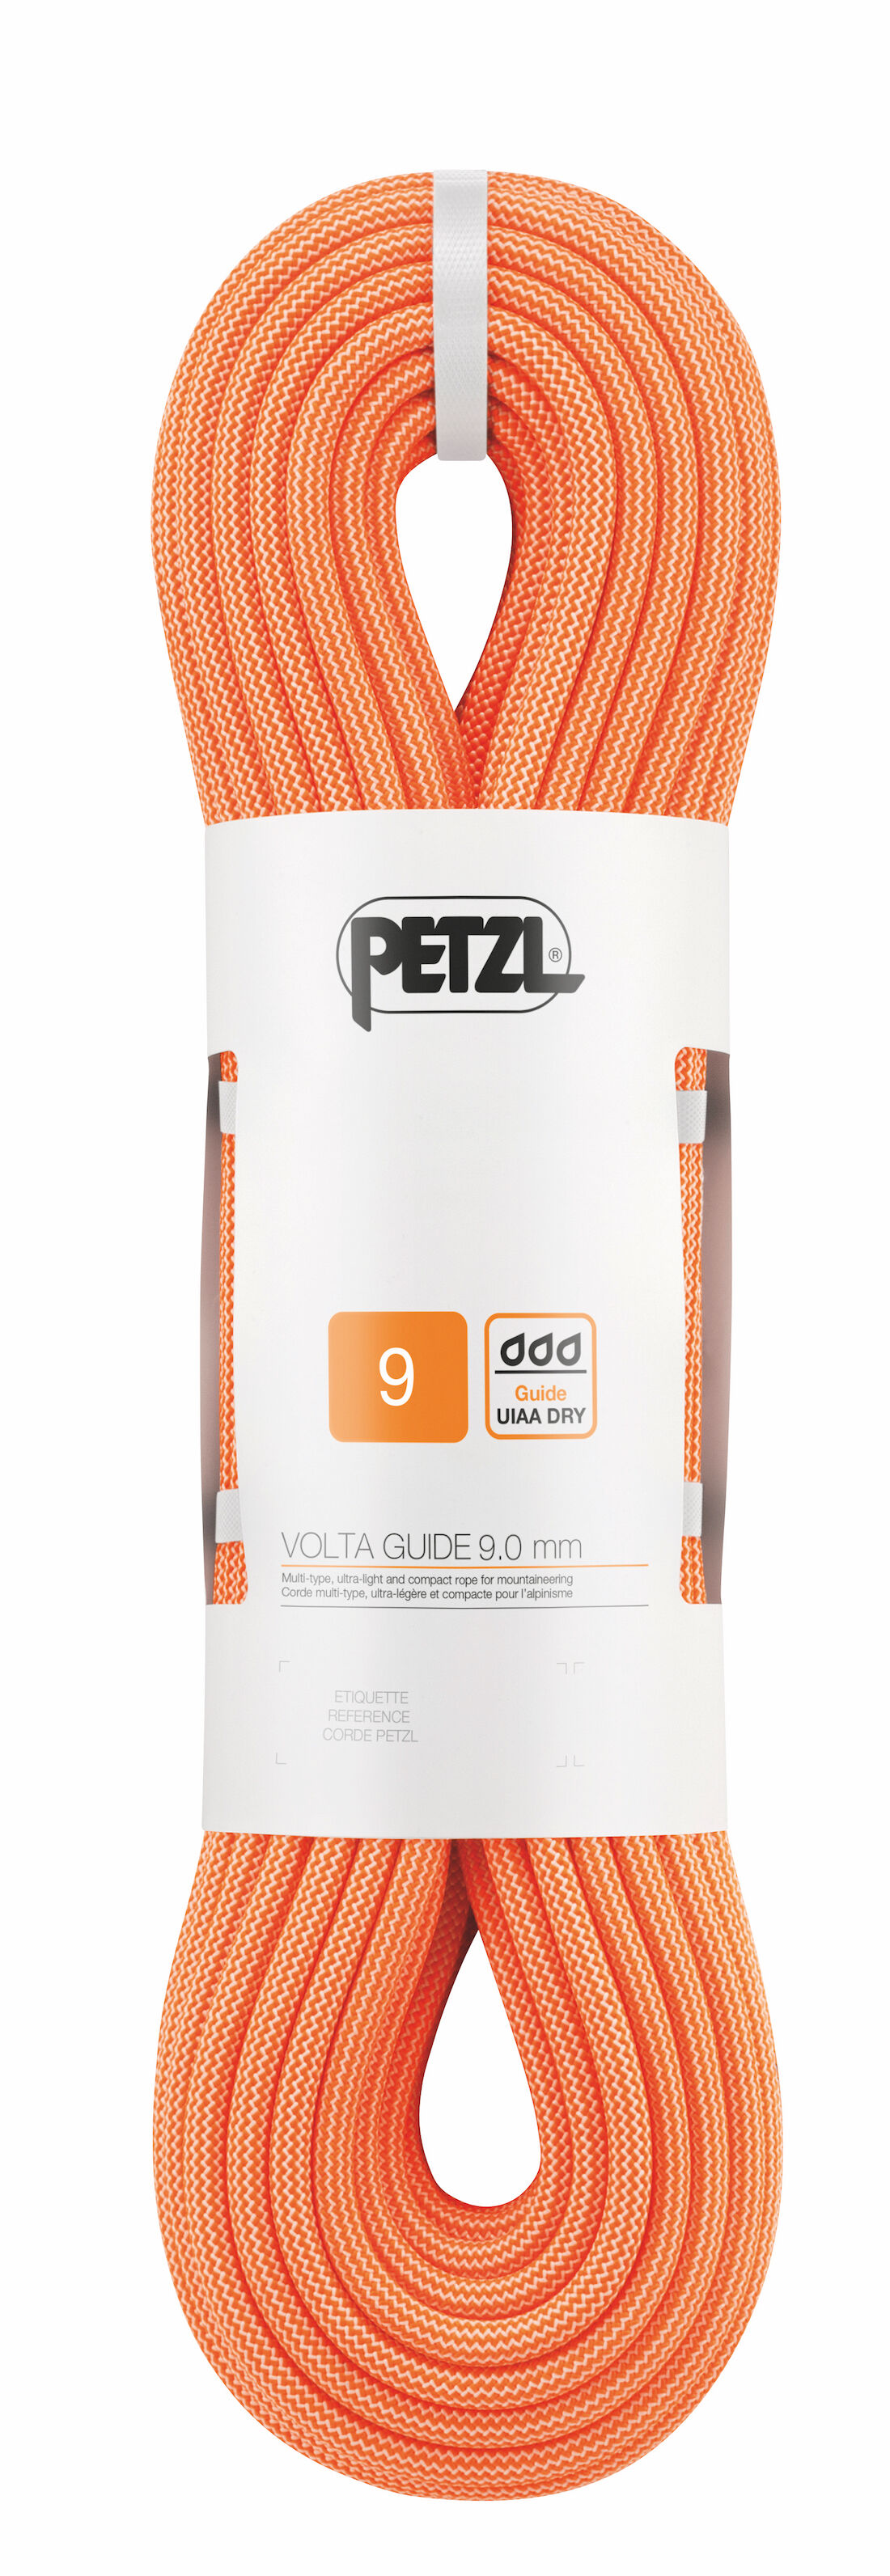 Petzl Volta Guide 9 mm - Klätterrep